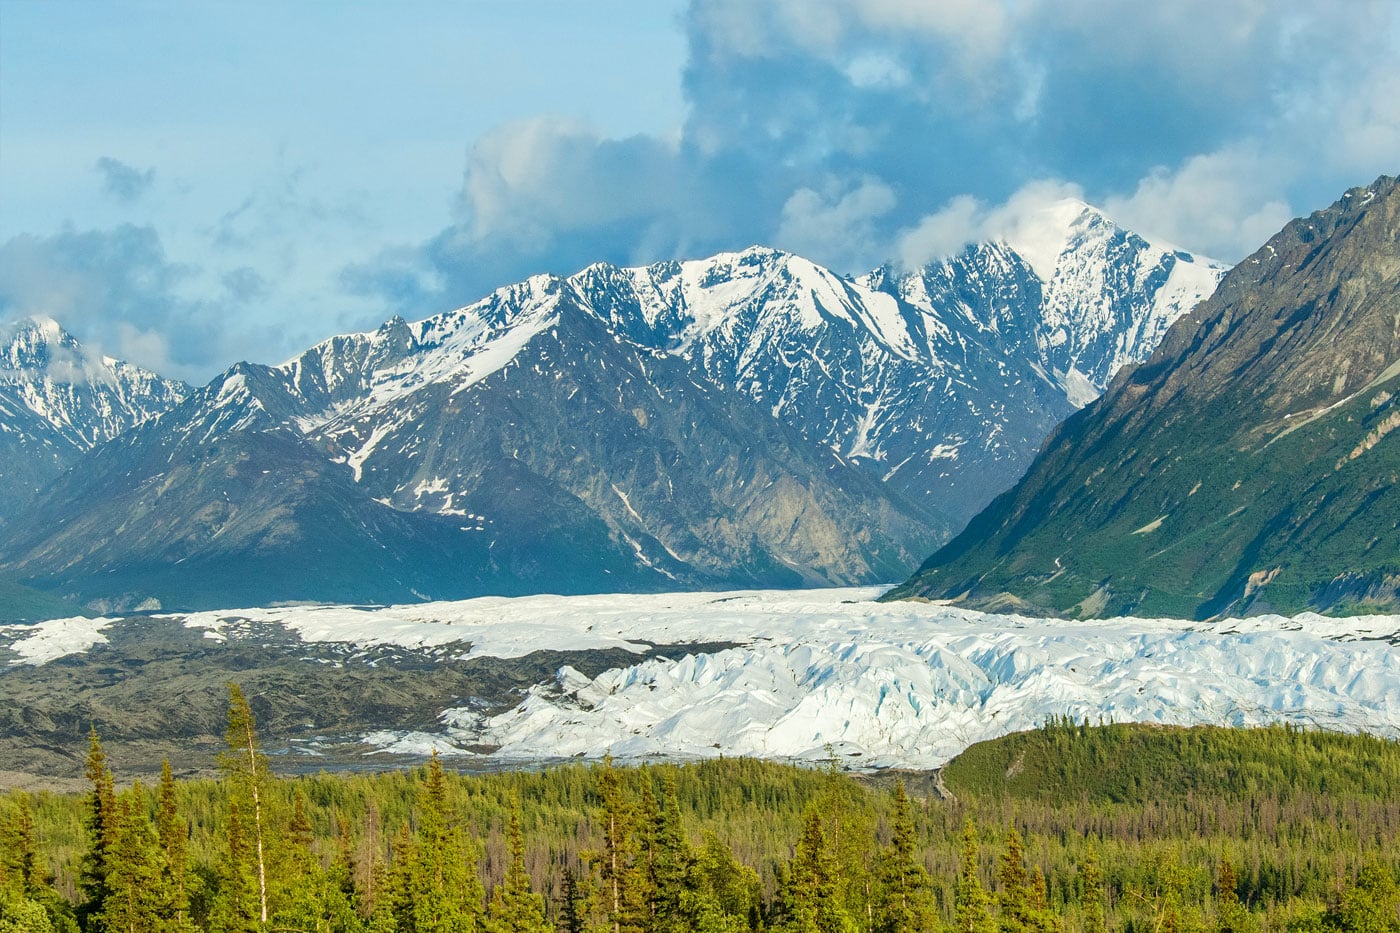 Mountains and glacier landscape